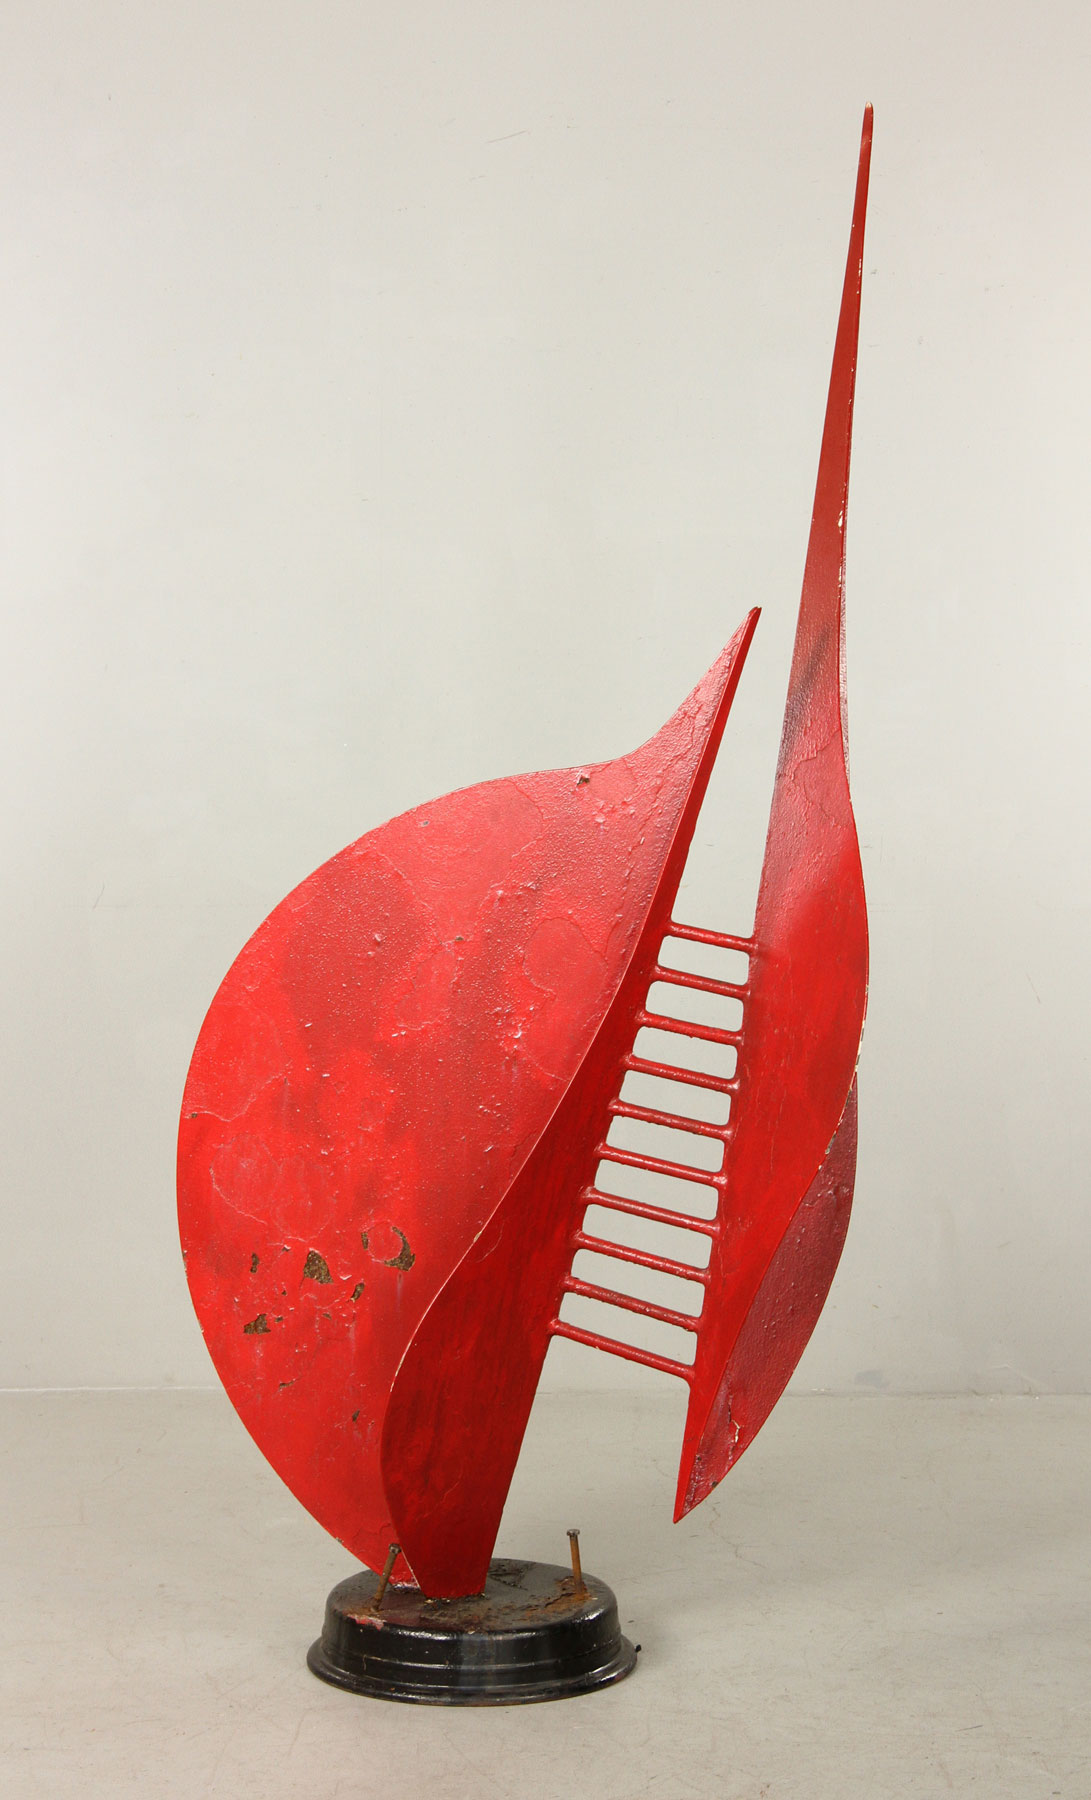 Rafael Consuegra, "Arpus," metal sculpture